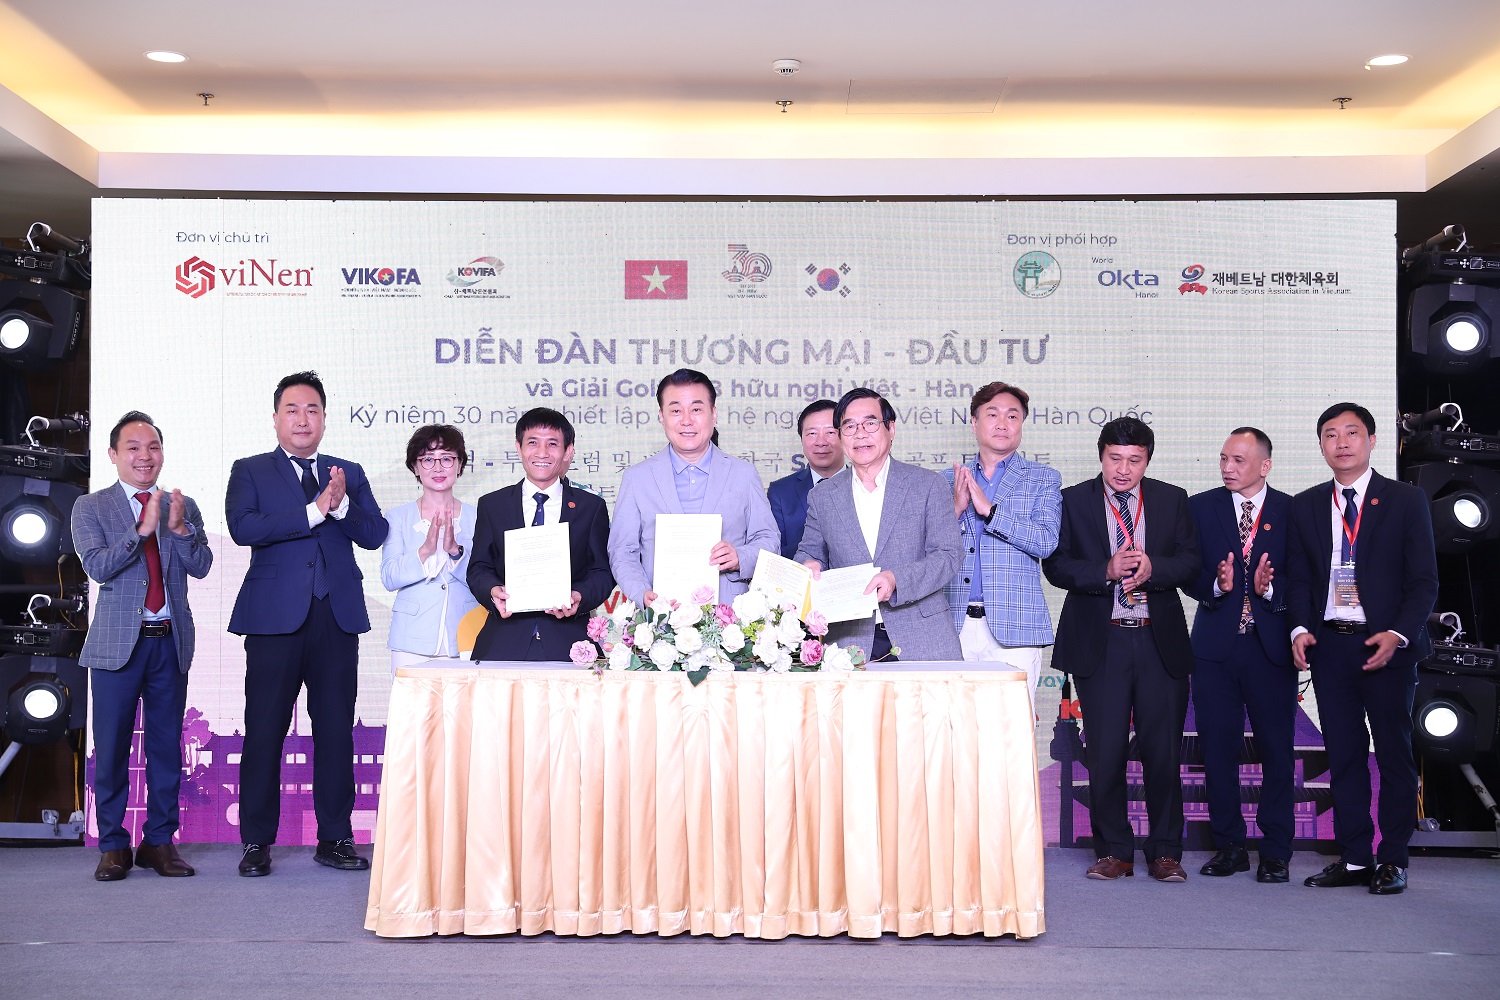 Diễn đàn Thương mại - Đầu tư và Giải VinenGolf S4B Hữu Nghị Việt Nam - Hàn Quốc